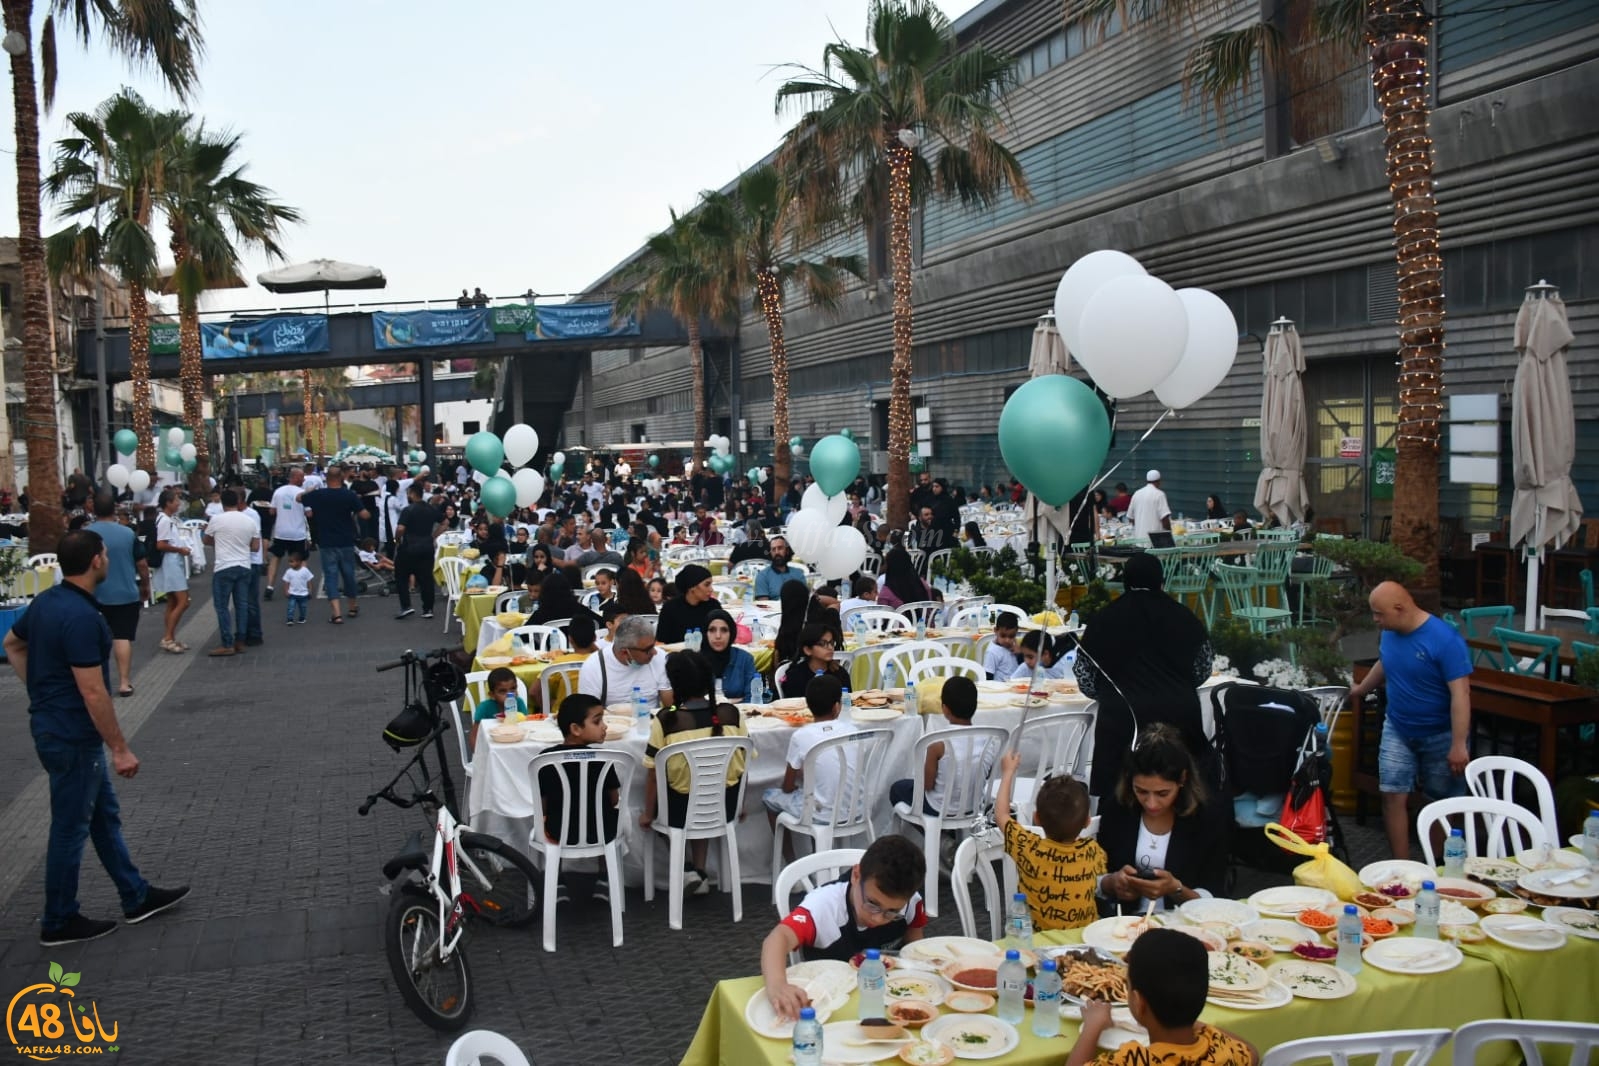 فيديو: مئات الأطفال وذويهم يشاركون في الافطار الجماعي السنوي بميناء يافا